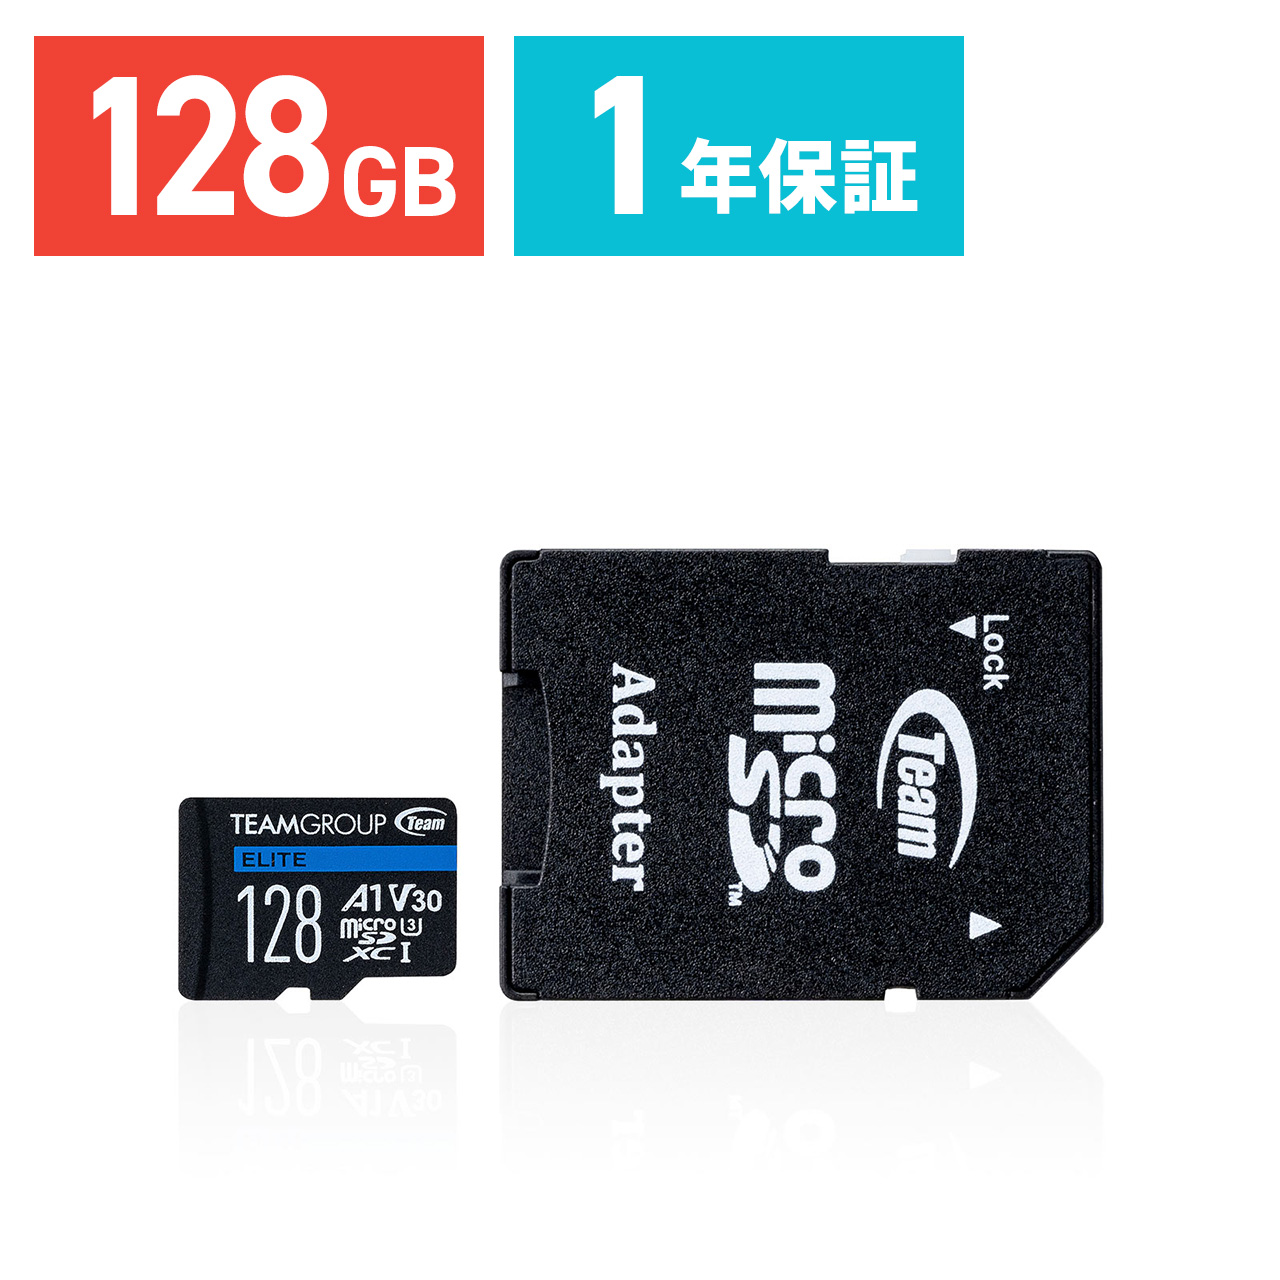 6995円 入荷予定 マイクロSDカード microSD 512GB microSDカード microSDXC Samsung サムスン PRO Plus Class10 UHS-I U3 V30 A2 R:160MB s W:120MB ゴープロ GoPro HERO10推奨品 SDアダプタ付 海外リテール MB-MD512KA CN メ